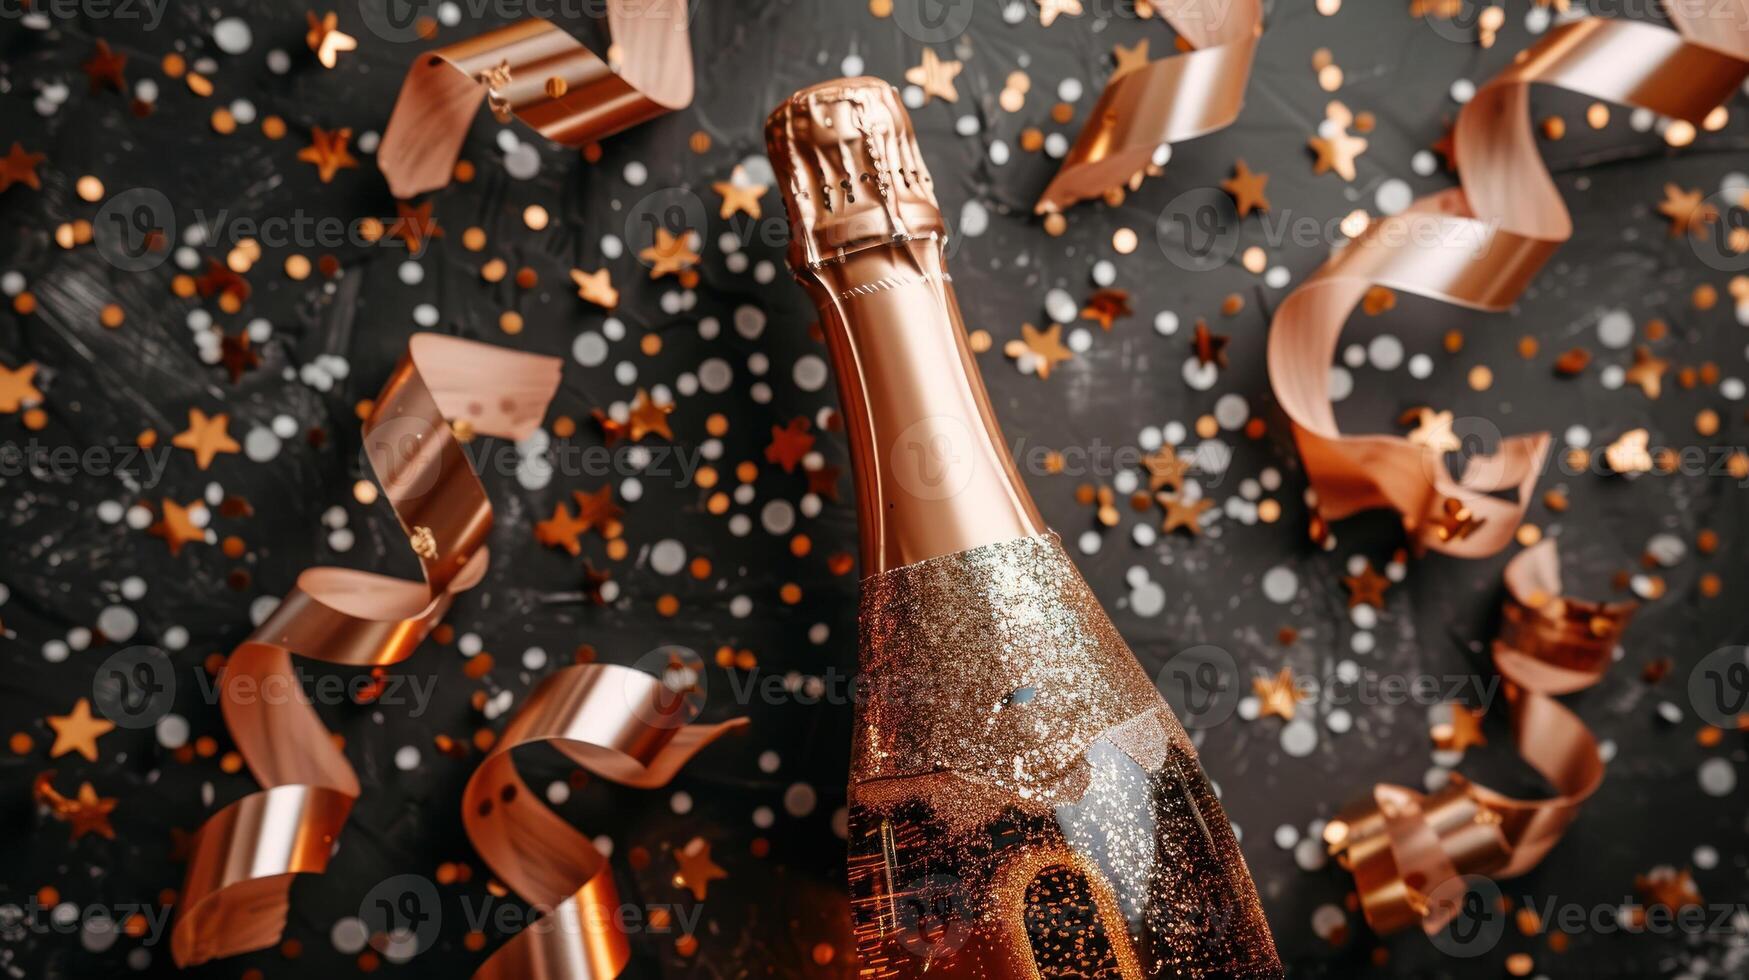 fles van Champagne versierd met confetti en slingers foto